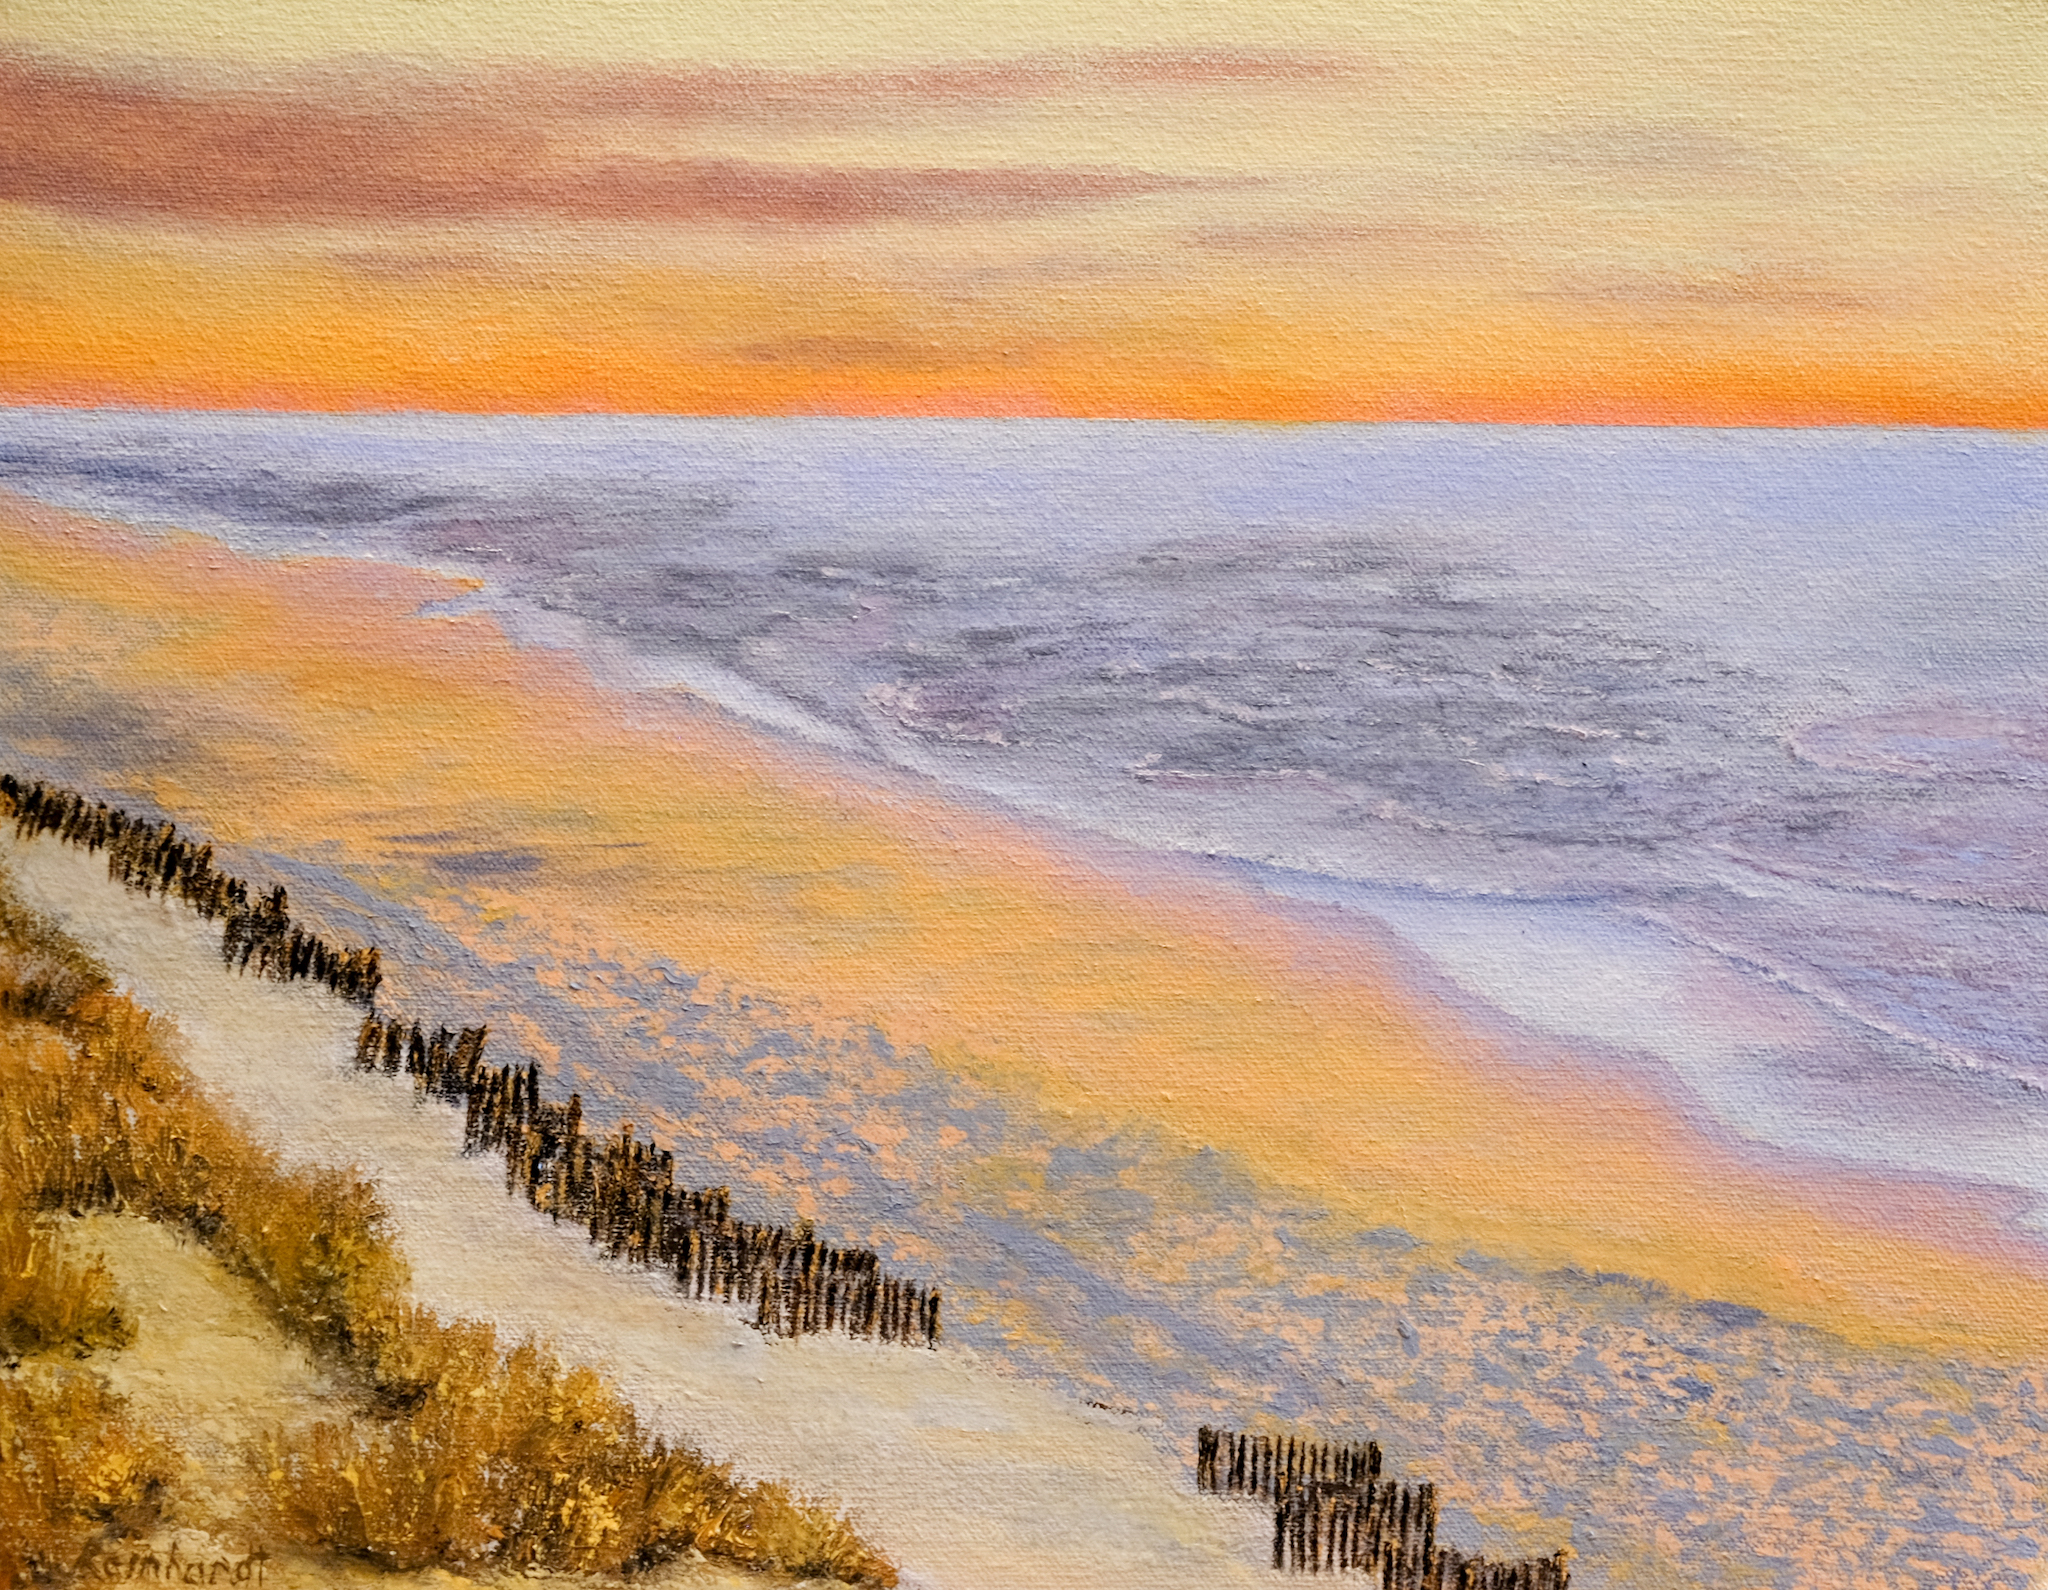 Thumbnail Image of Sunrise at Orange Beach